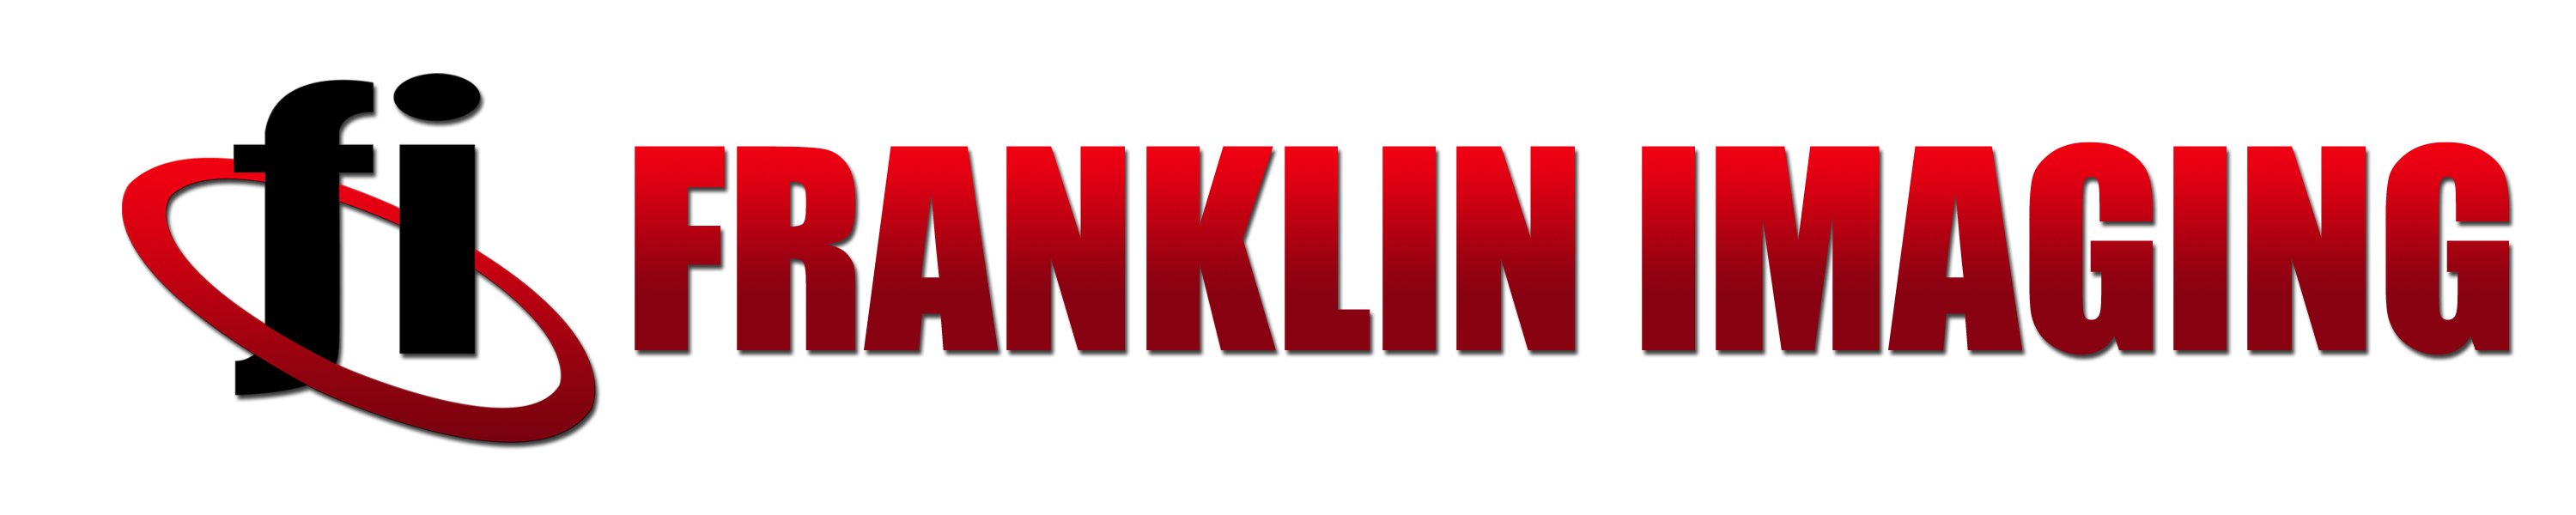 Franklin Imaging